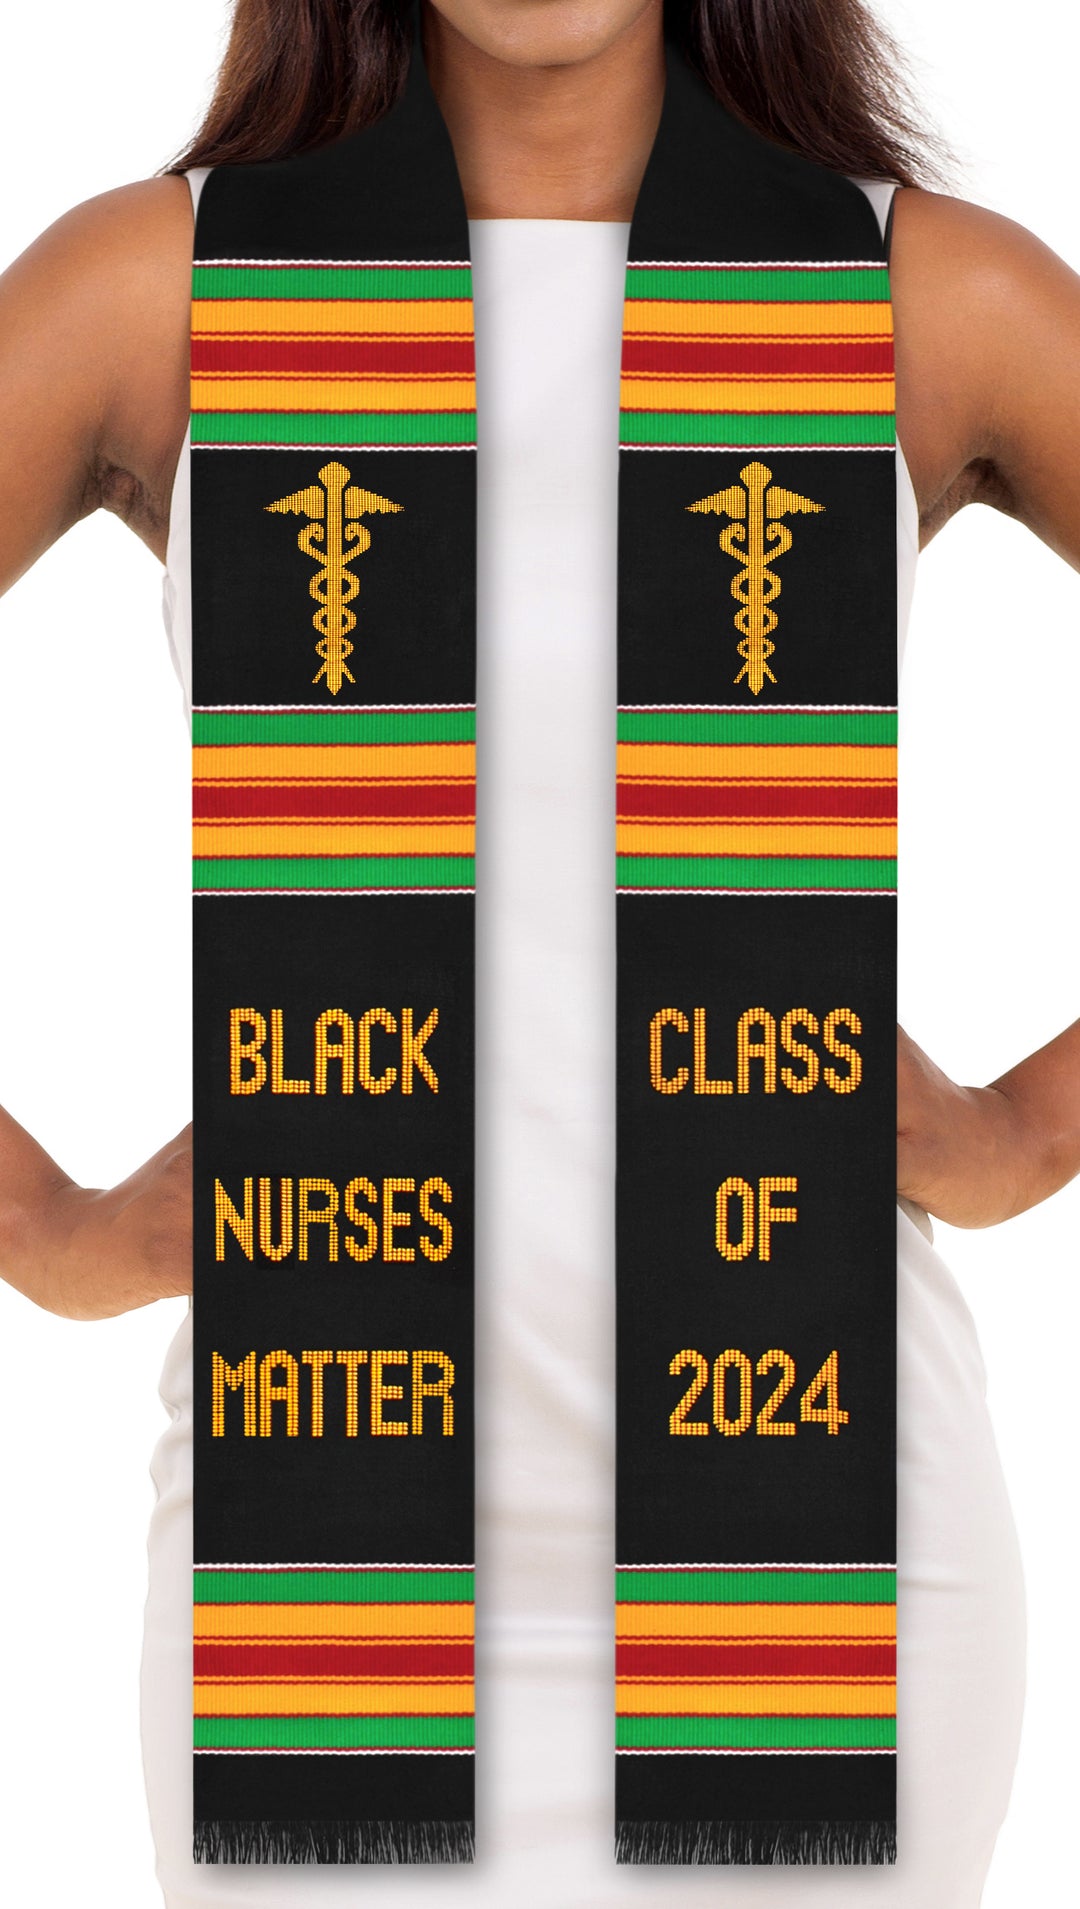 Black Nurses Matter Class of 2024 Kente Graduation Stole with Medicine Caduceus Symbol